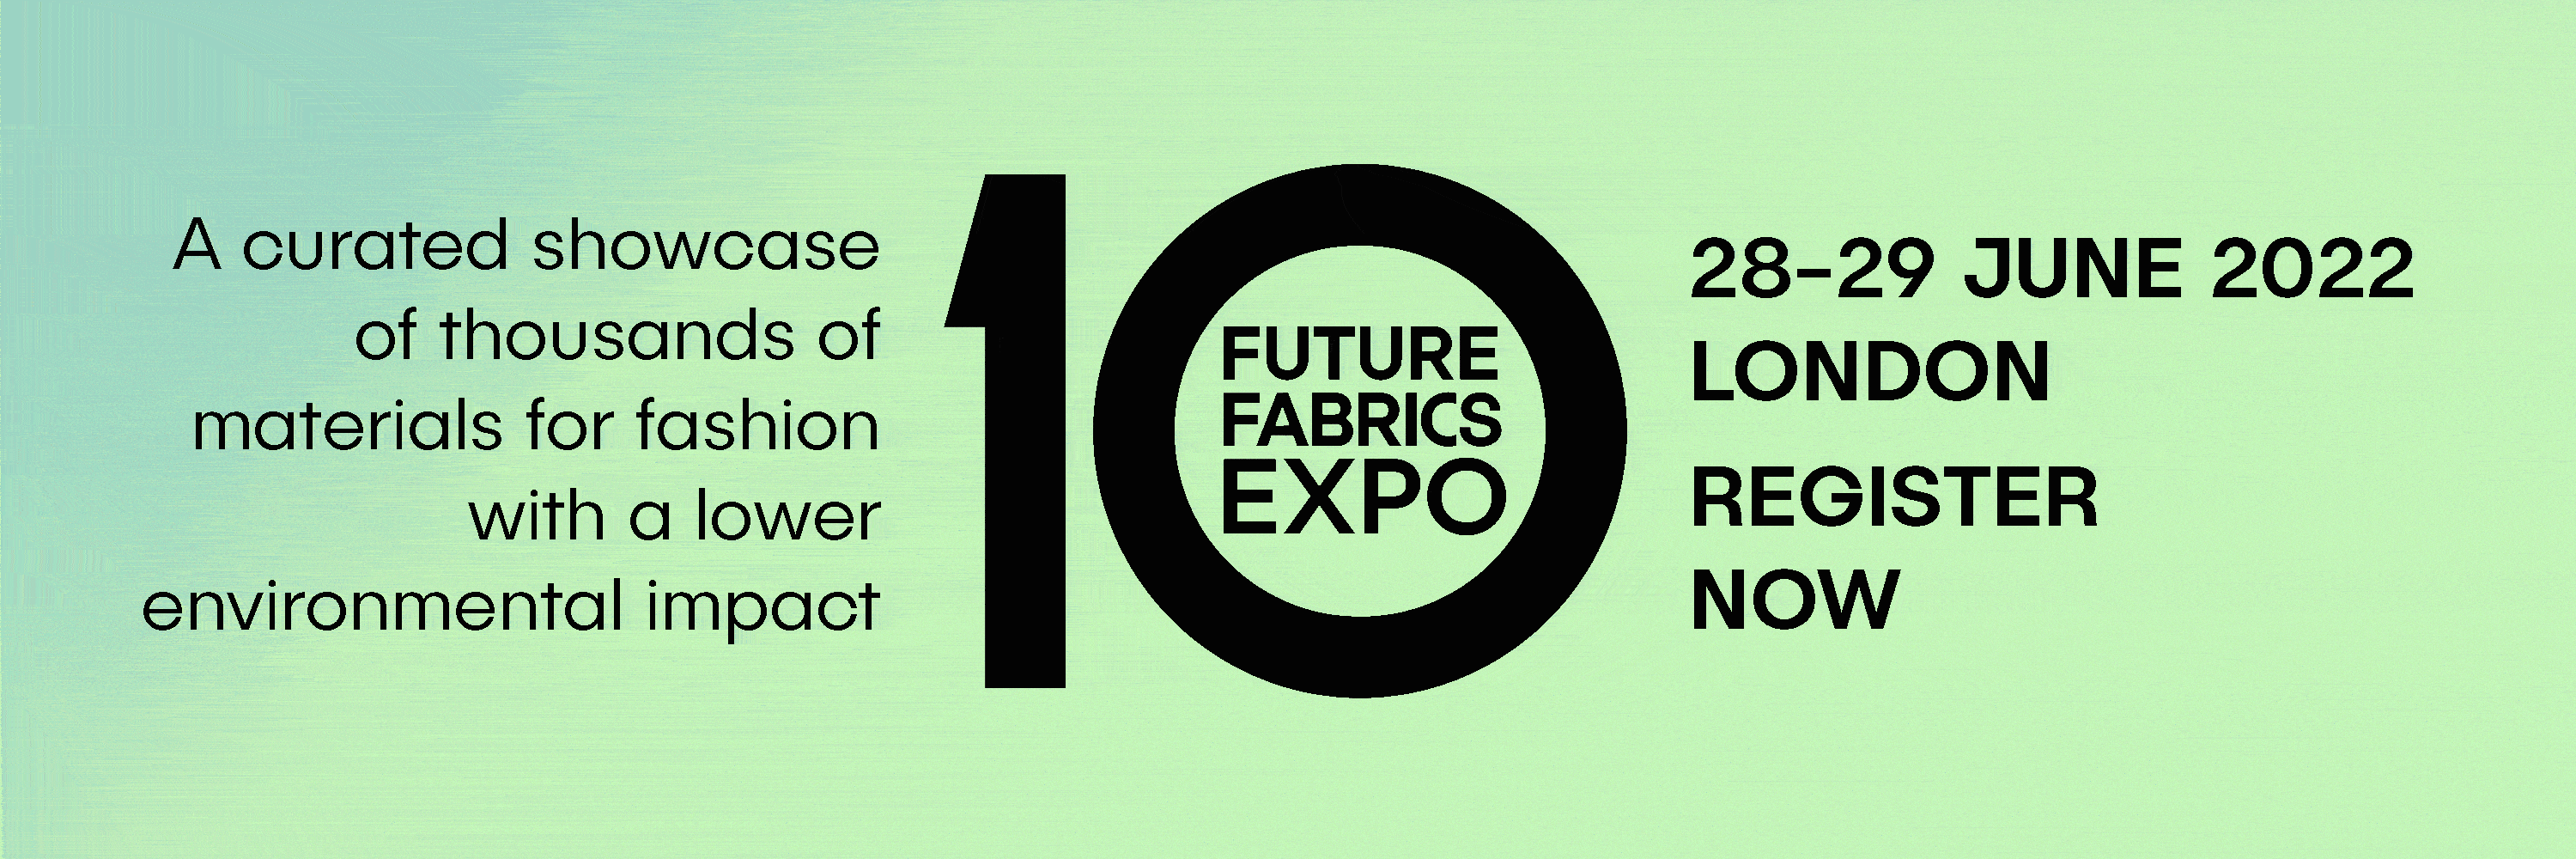 Future Fabrics Expo May 2022